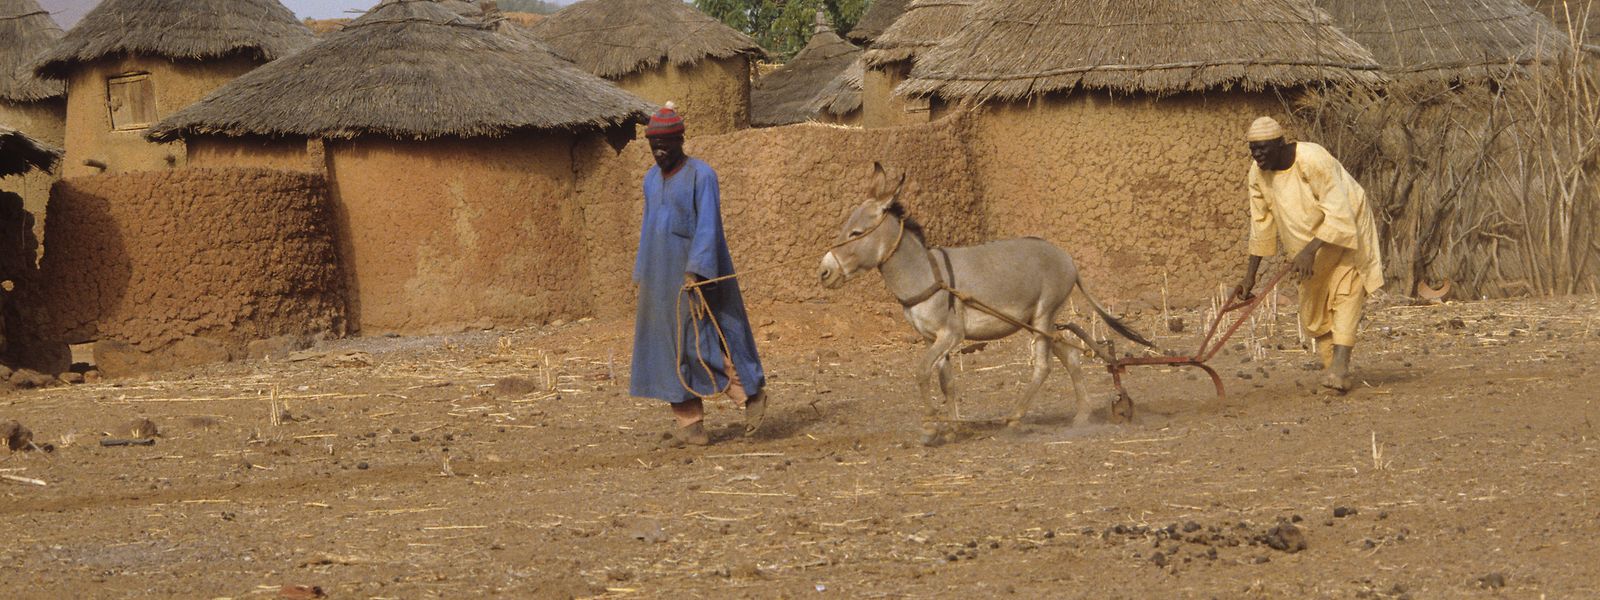 Die Sahelzone, zu der auch Burkina Faso gehört, ist besonders schwer vom Klimawandel betroffen. Hitze- und Dürreperioden nehmen zu, während sich die Sahara immer weiter ausbreitet. Das birgt hohes Konfliktpotenzial im Kampf um die ohnehin schon begrenzten Ressourcen.